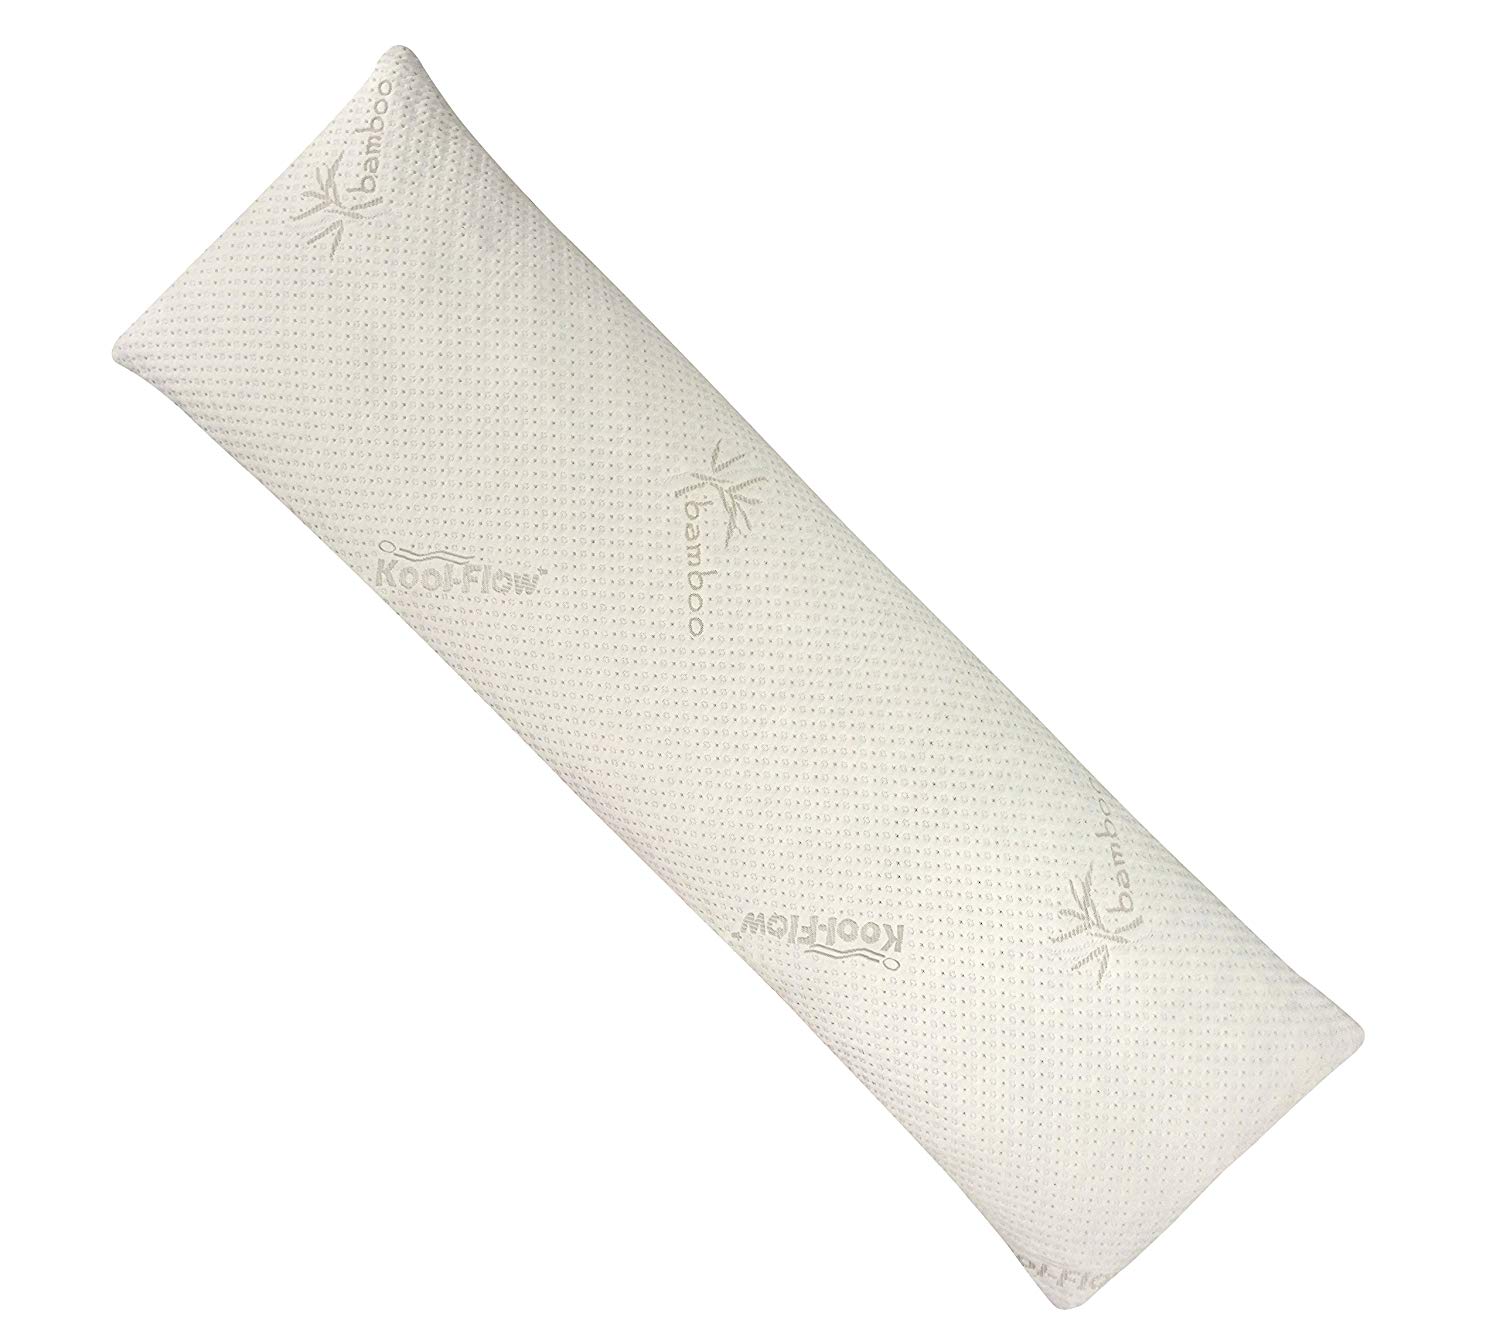 Snuggle-Pedic Memory Foam Body Pillow